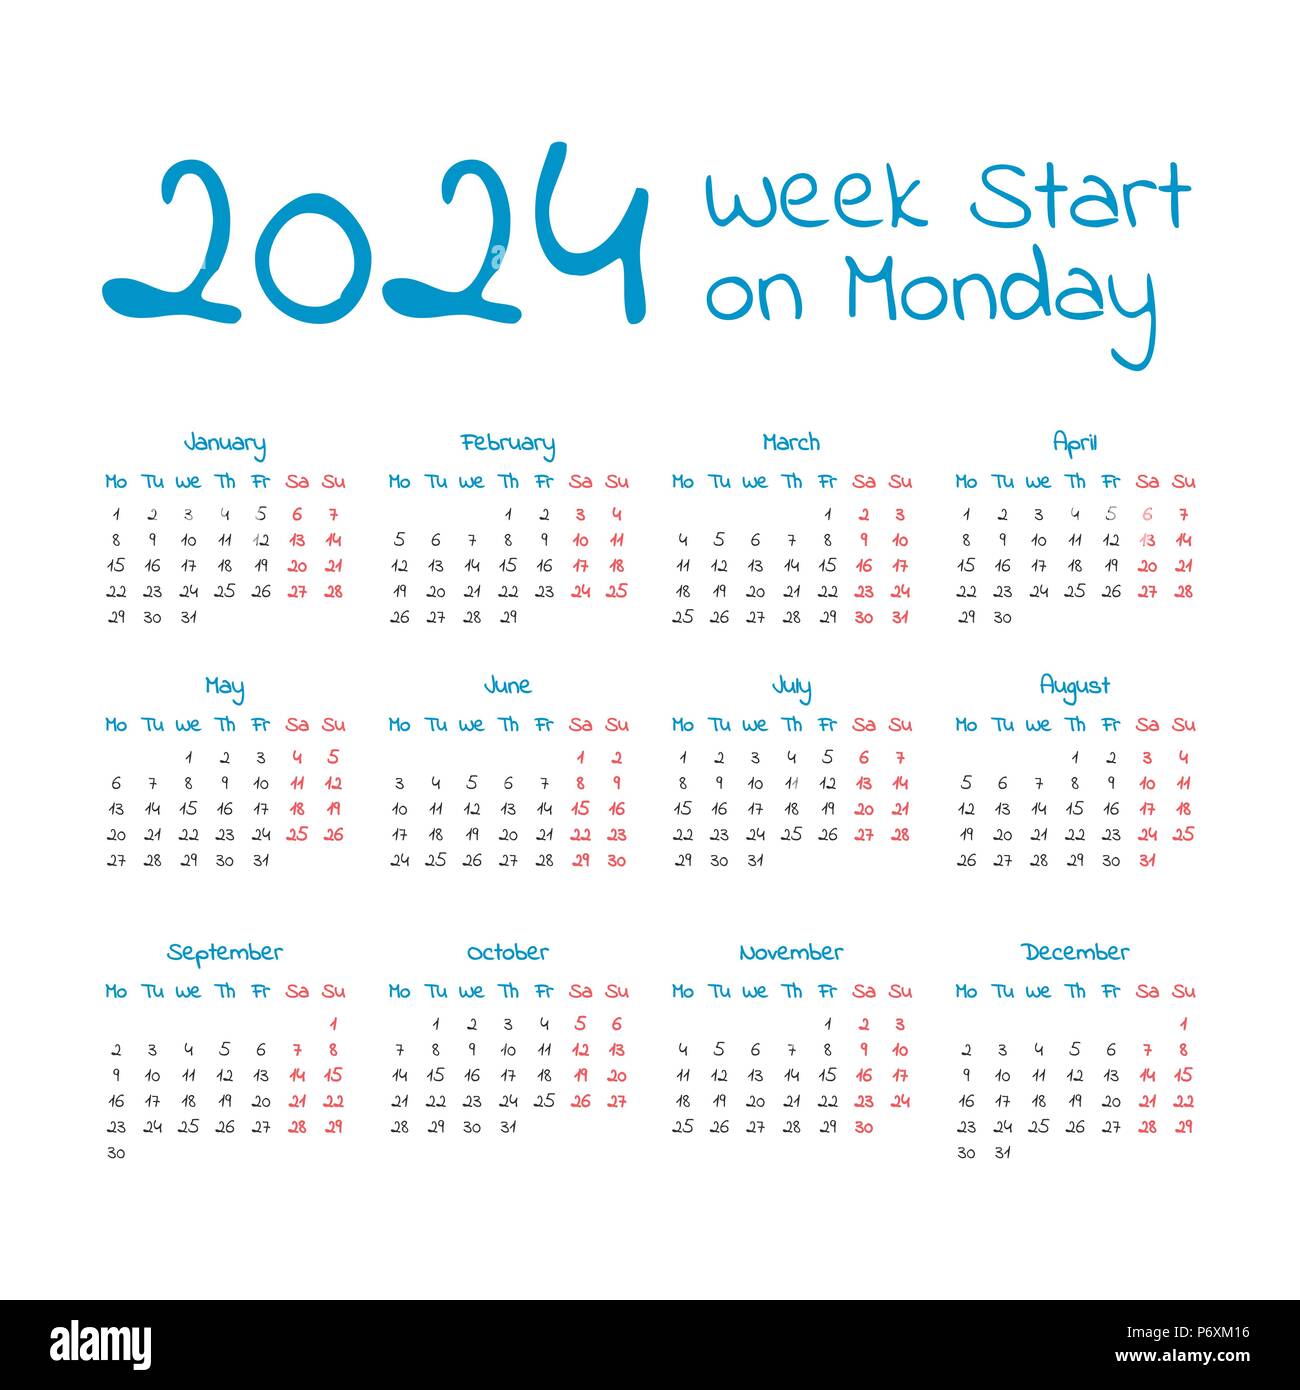 Simple 2024 year calendar week Banque de photographies et d’images à